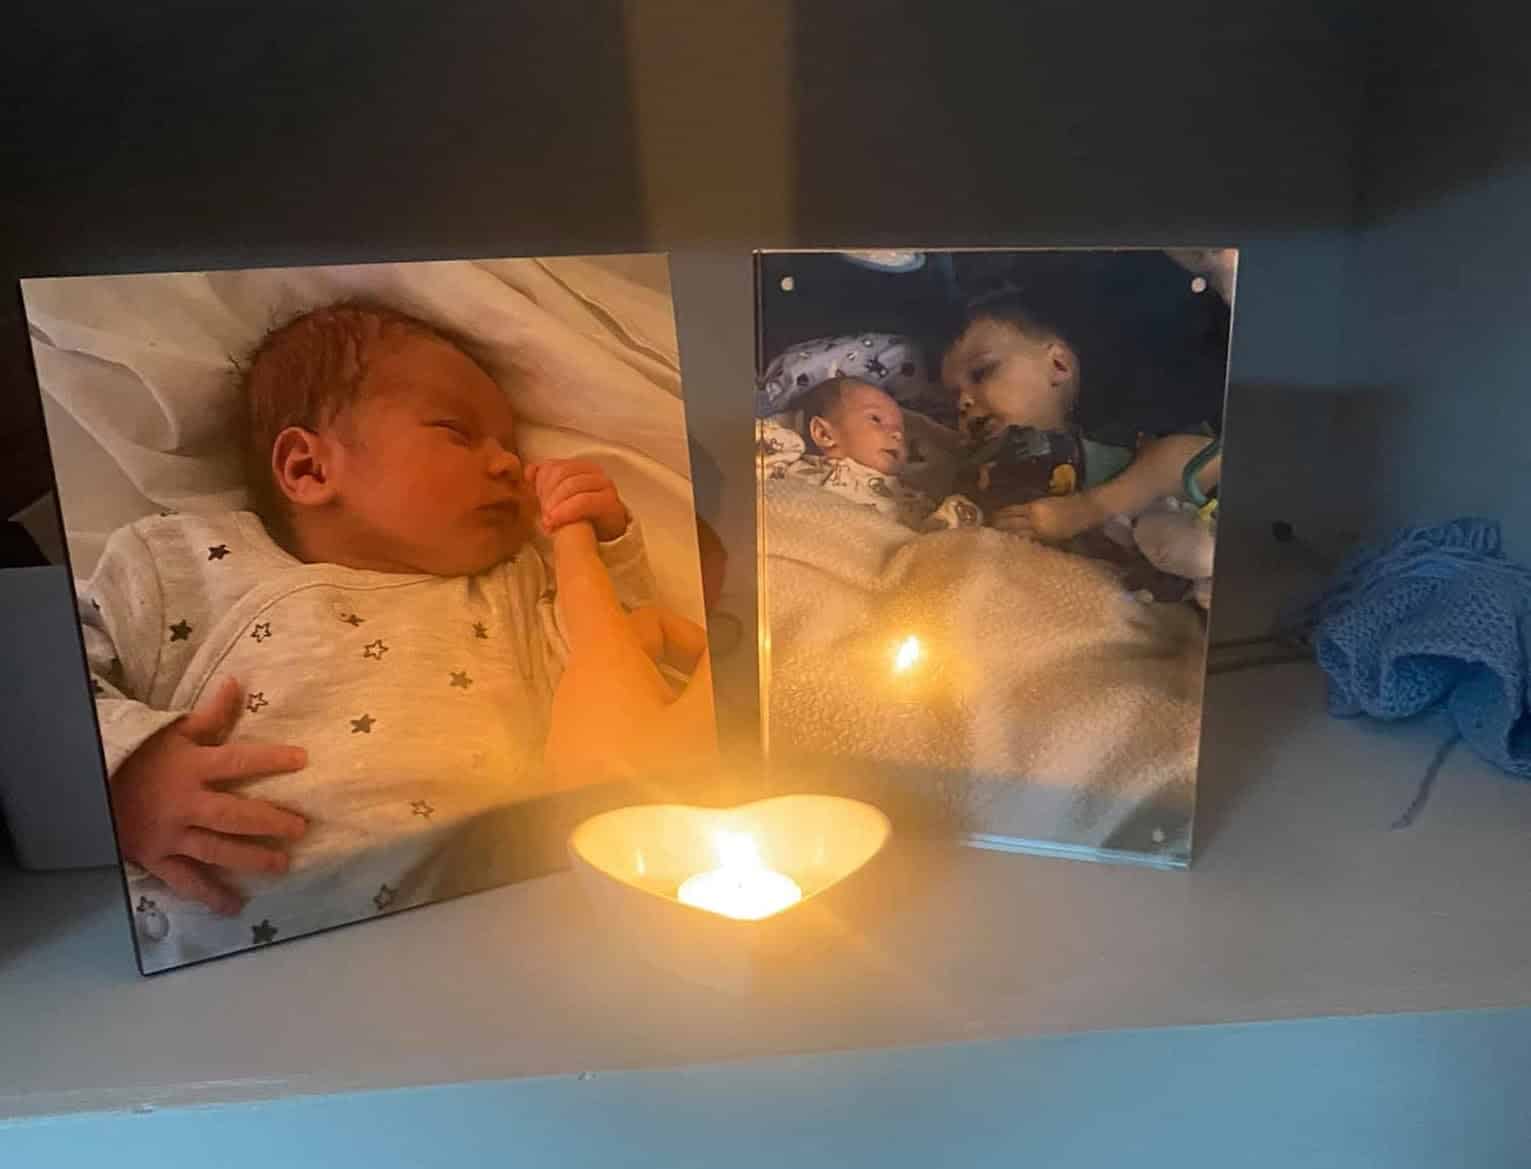 Bebeluș de 3 luni, găsit mort, noaptea, în pătuțul lui: "Venisem să-i schimb scutecul, dar era rece ca gheața" | Demamici.ro